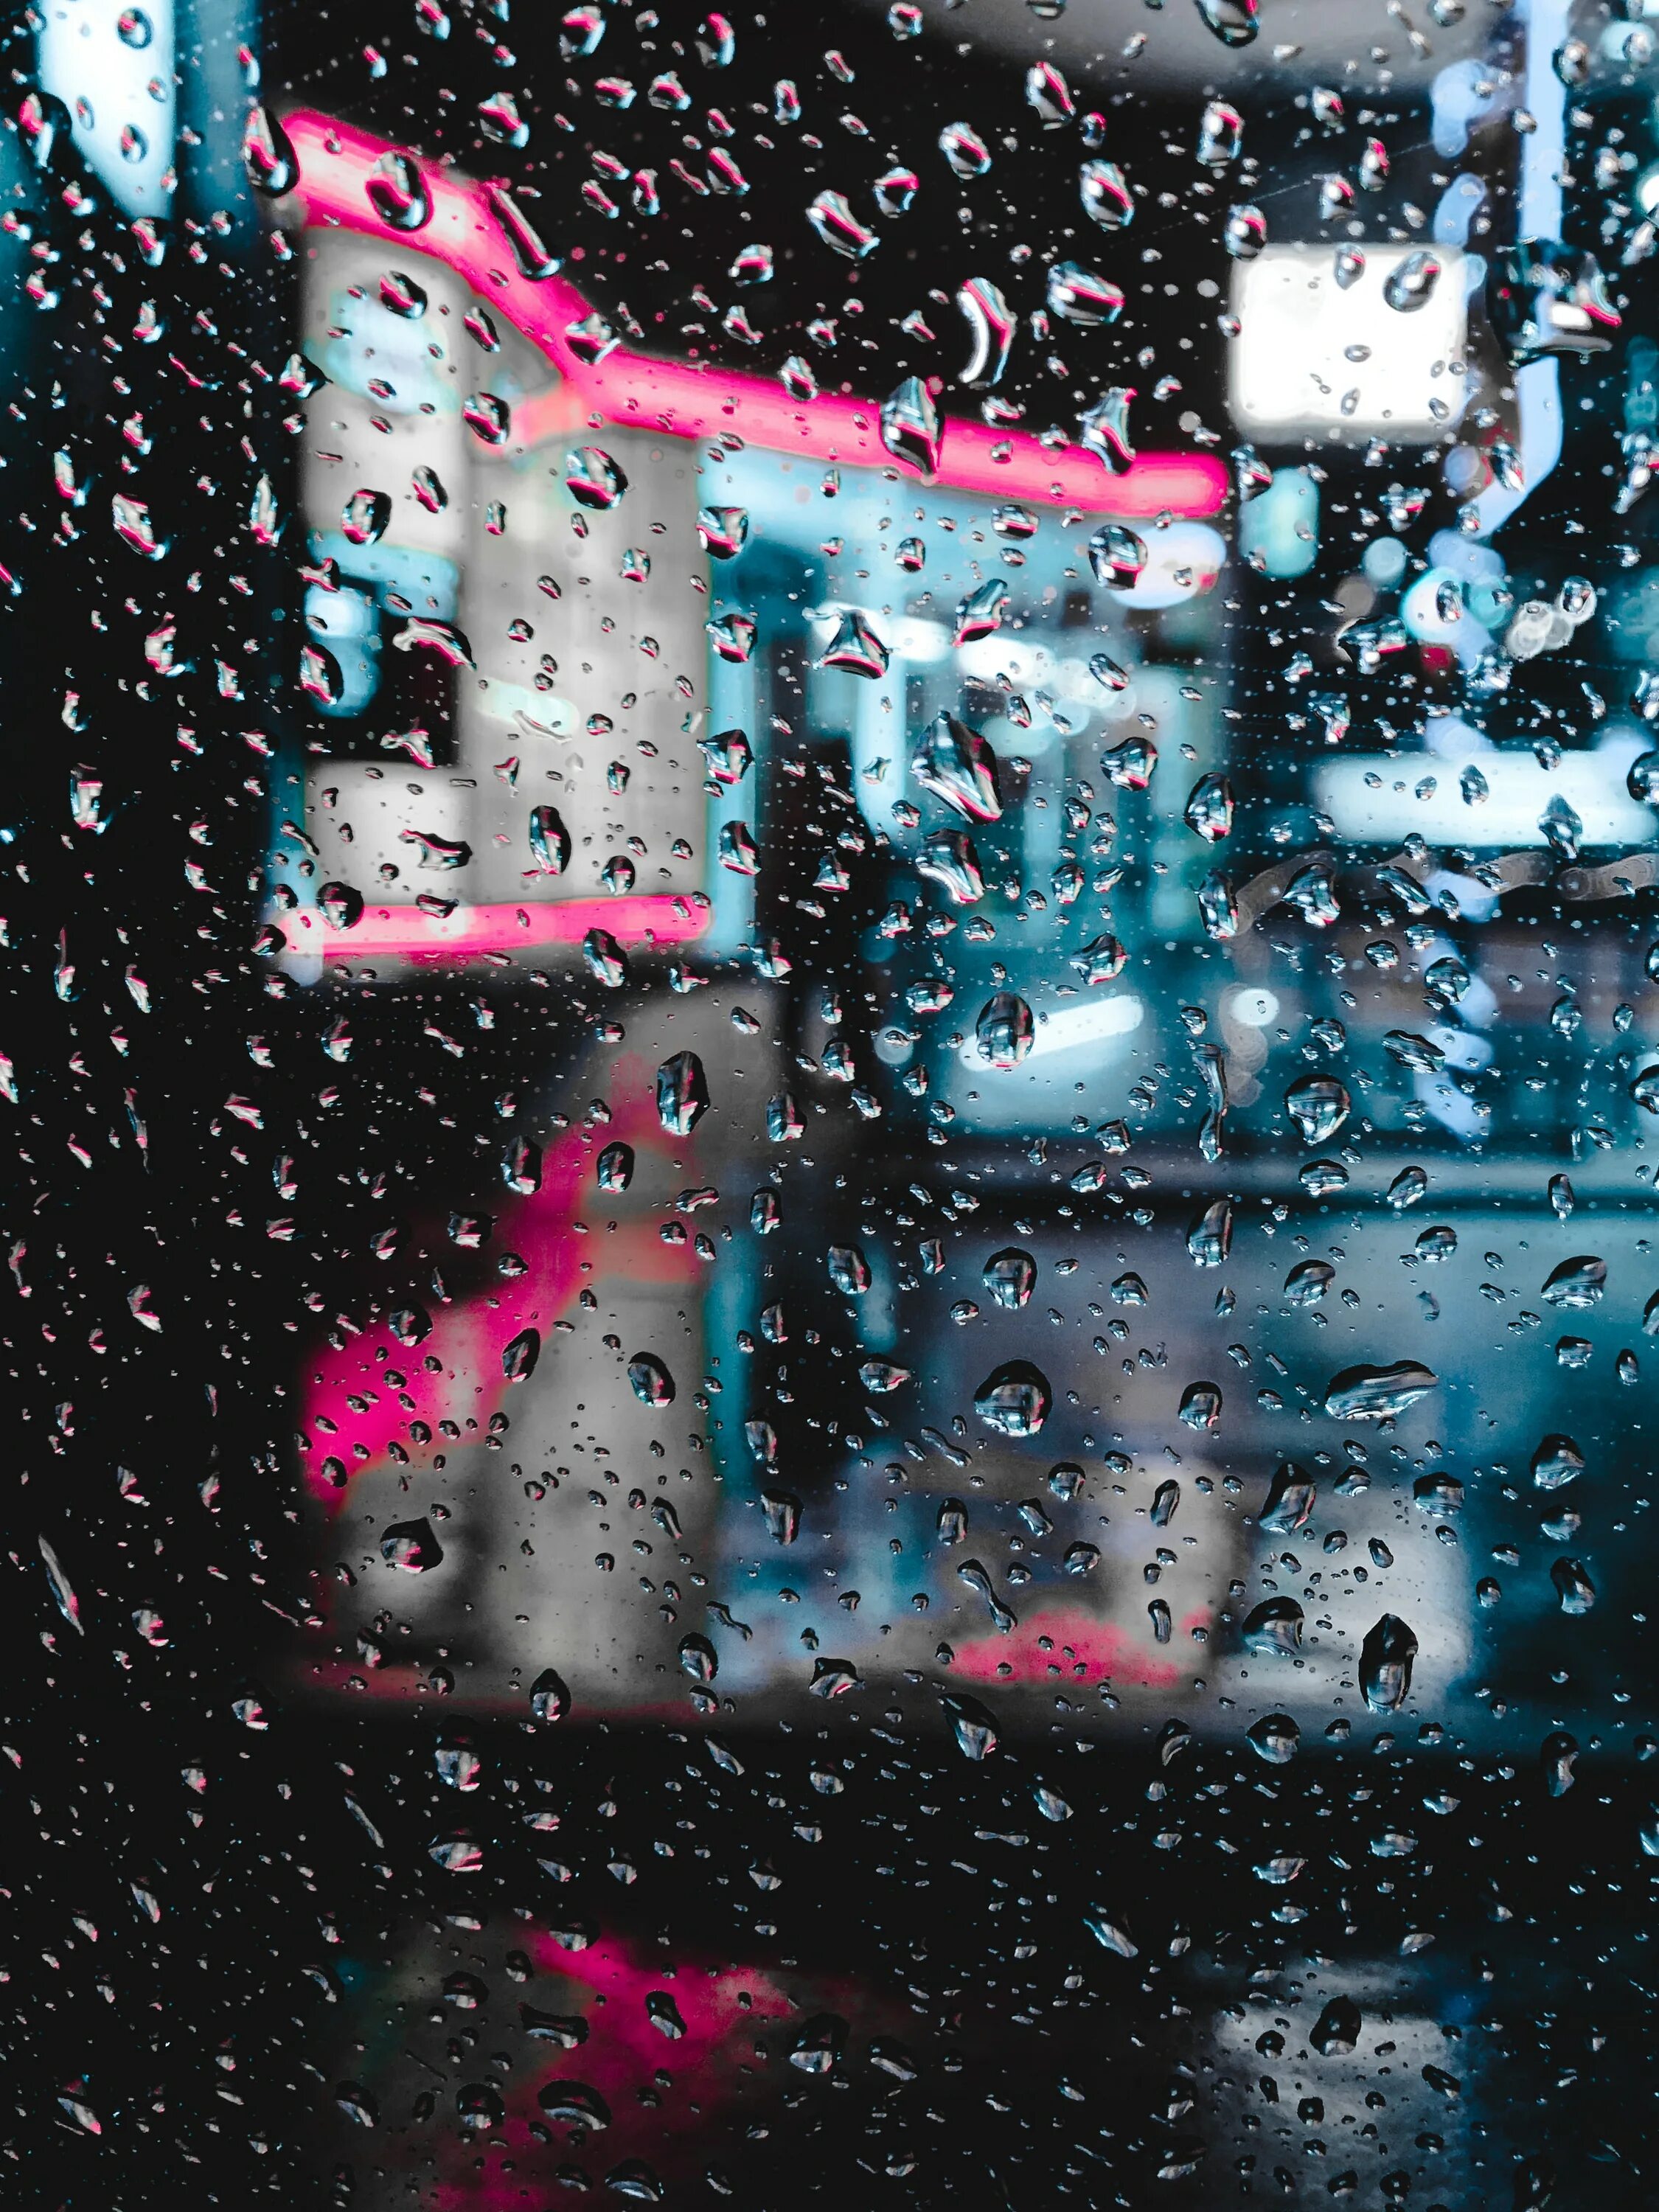 T me drop glass. Капли на стекле. Дождь на стекле. Капли дождя на стекле. Розовые капли на стекле.